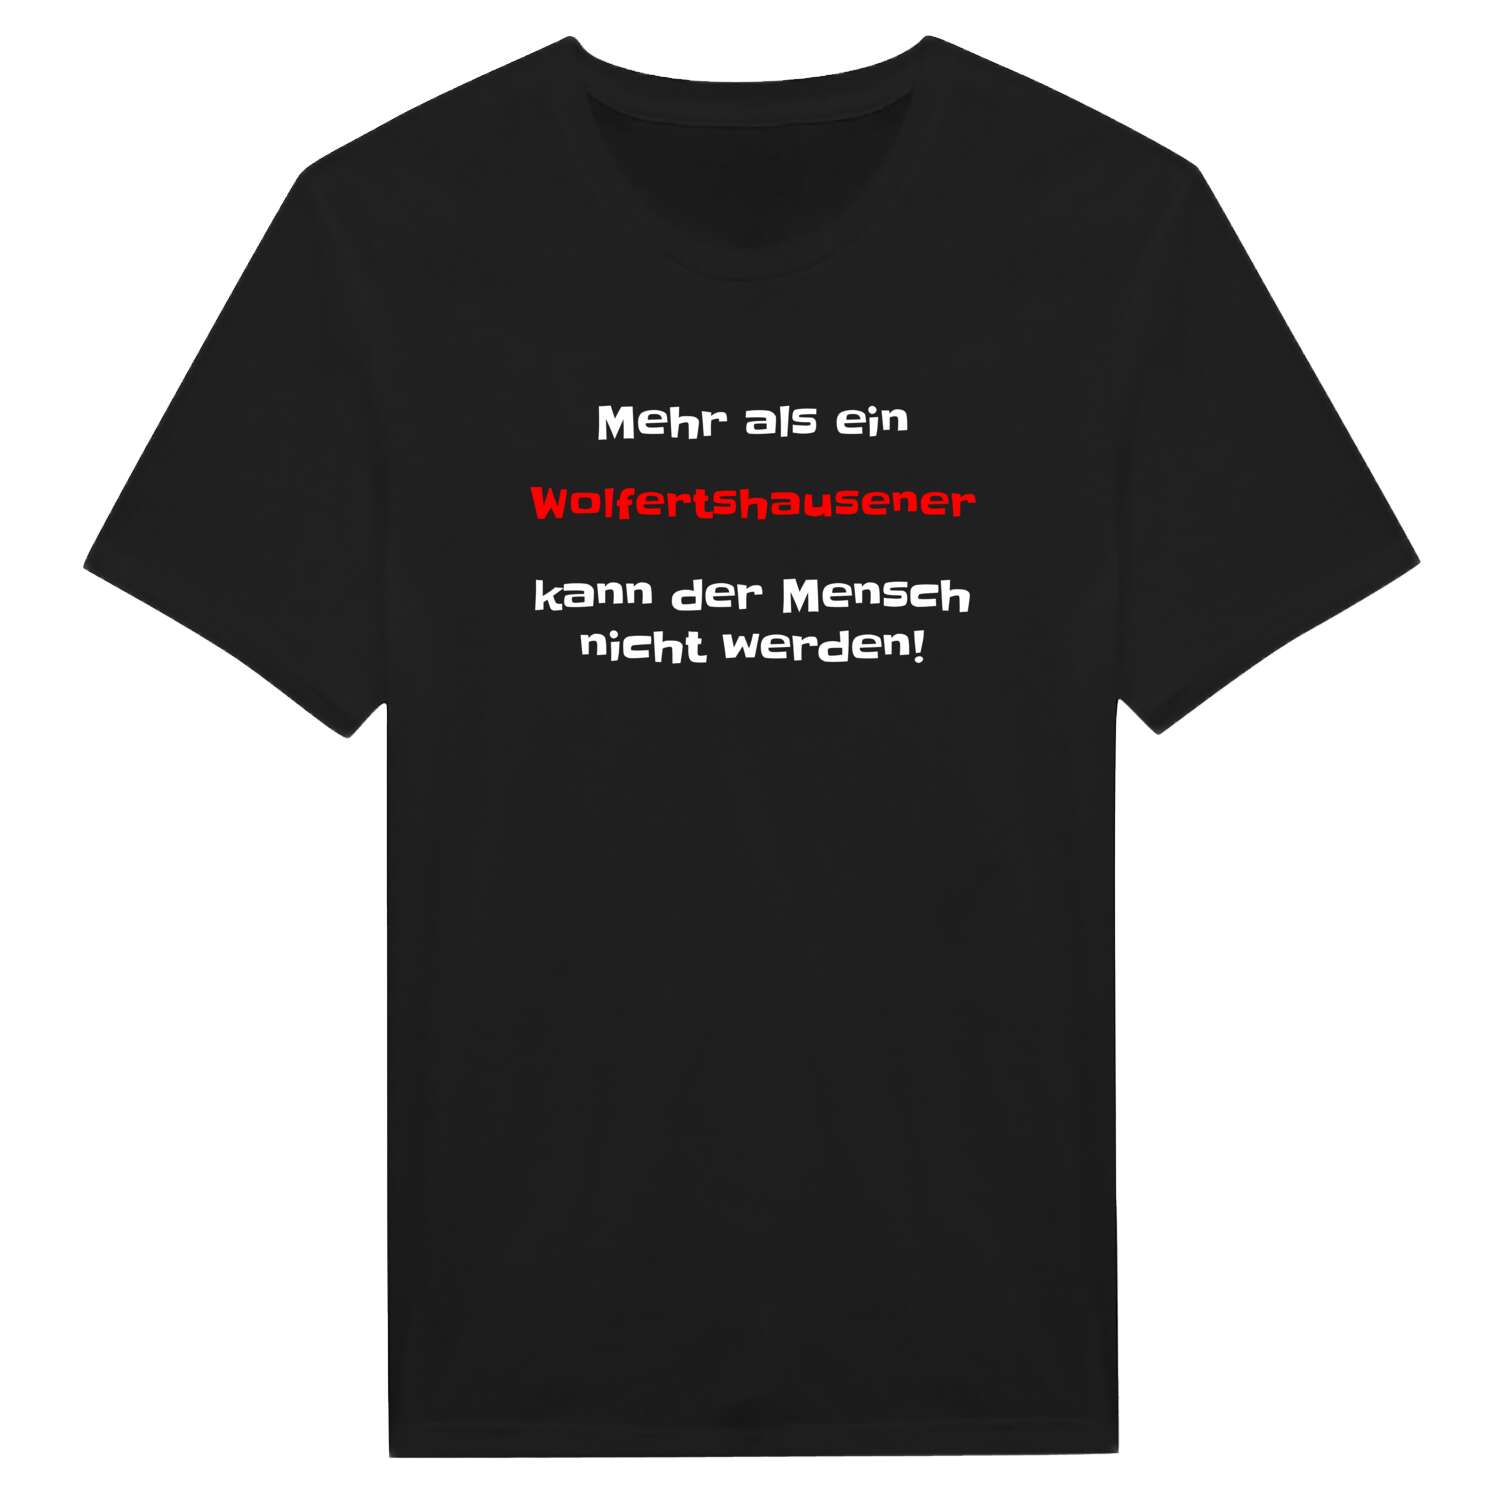 Wolfertshausen T-Shirt »Mehr als ein«